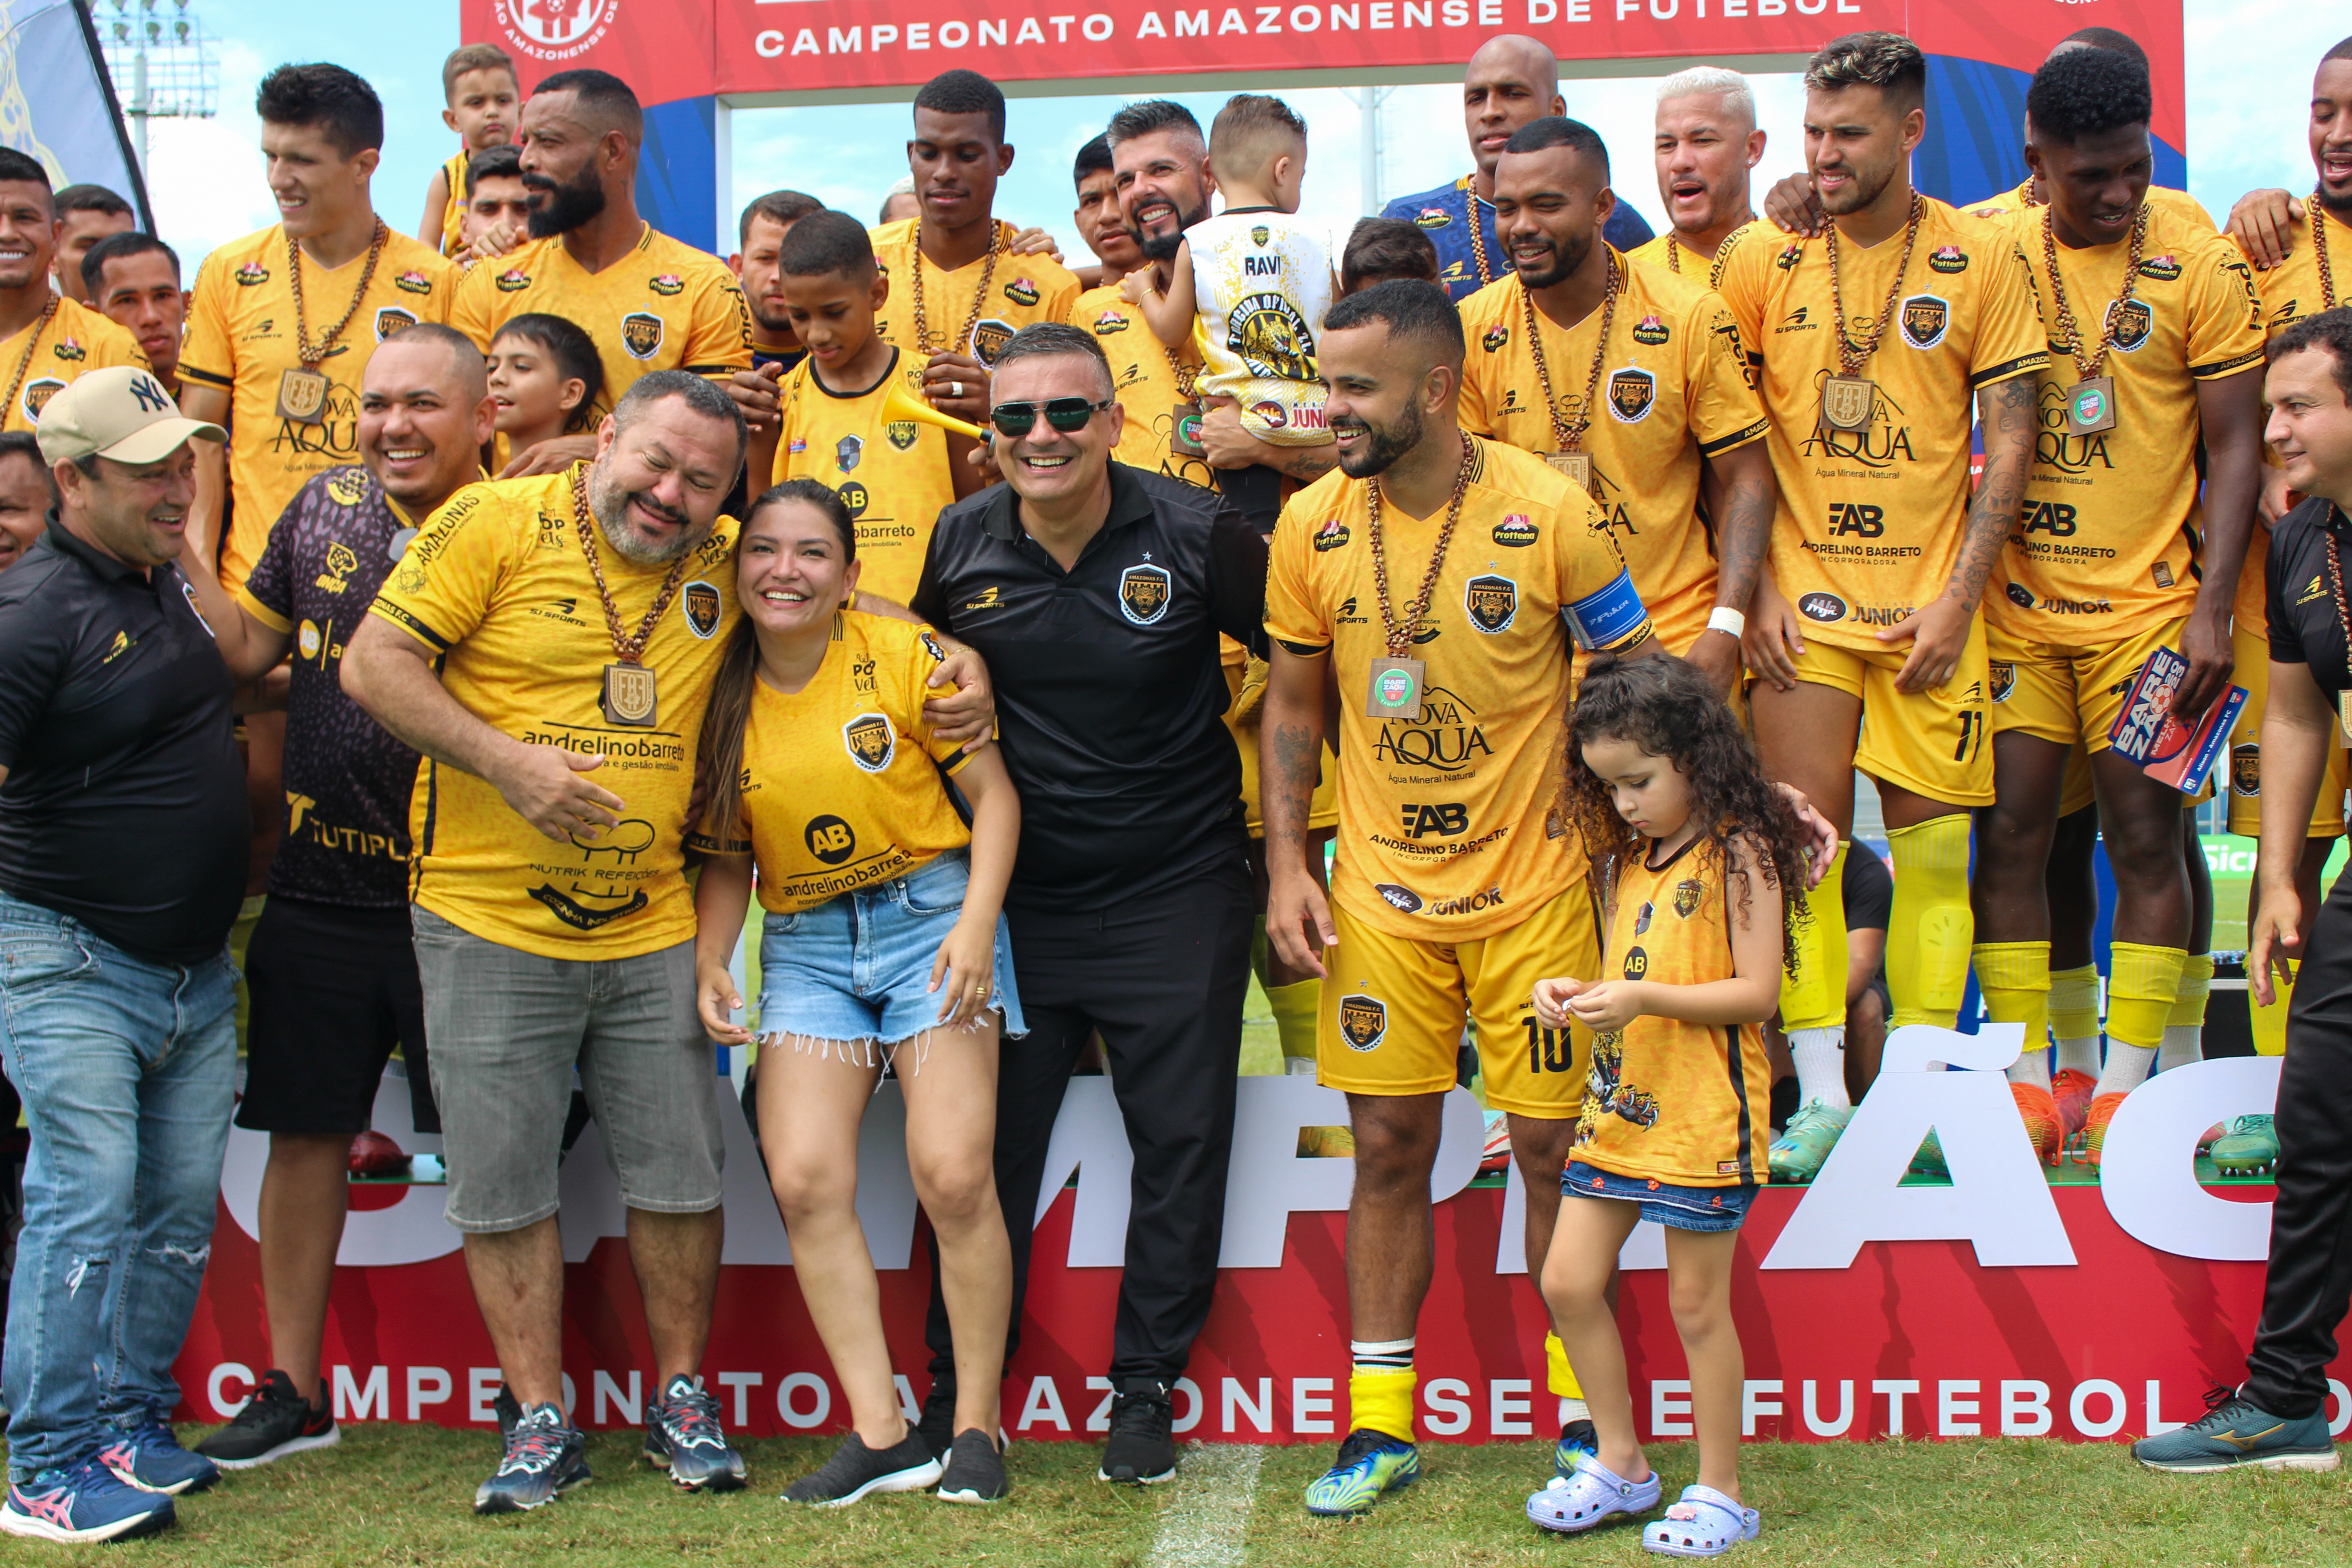 Série D - como um time ingressa na 4ª divisão do Campeonato Brasileiro? -  Gestão Desportiva